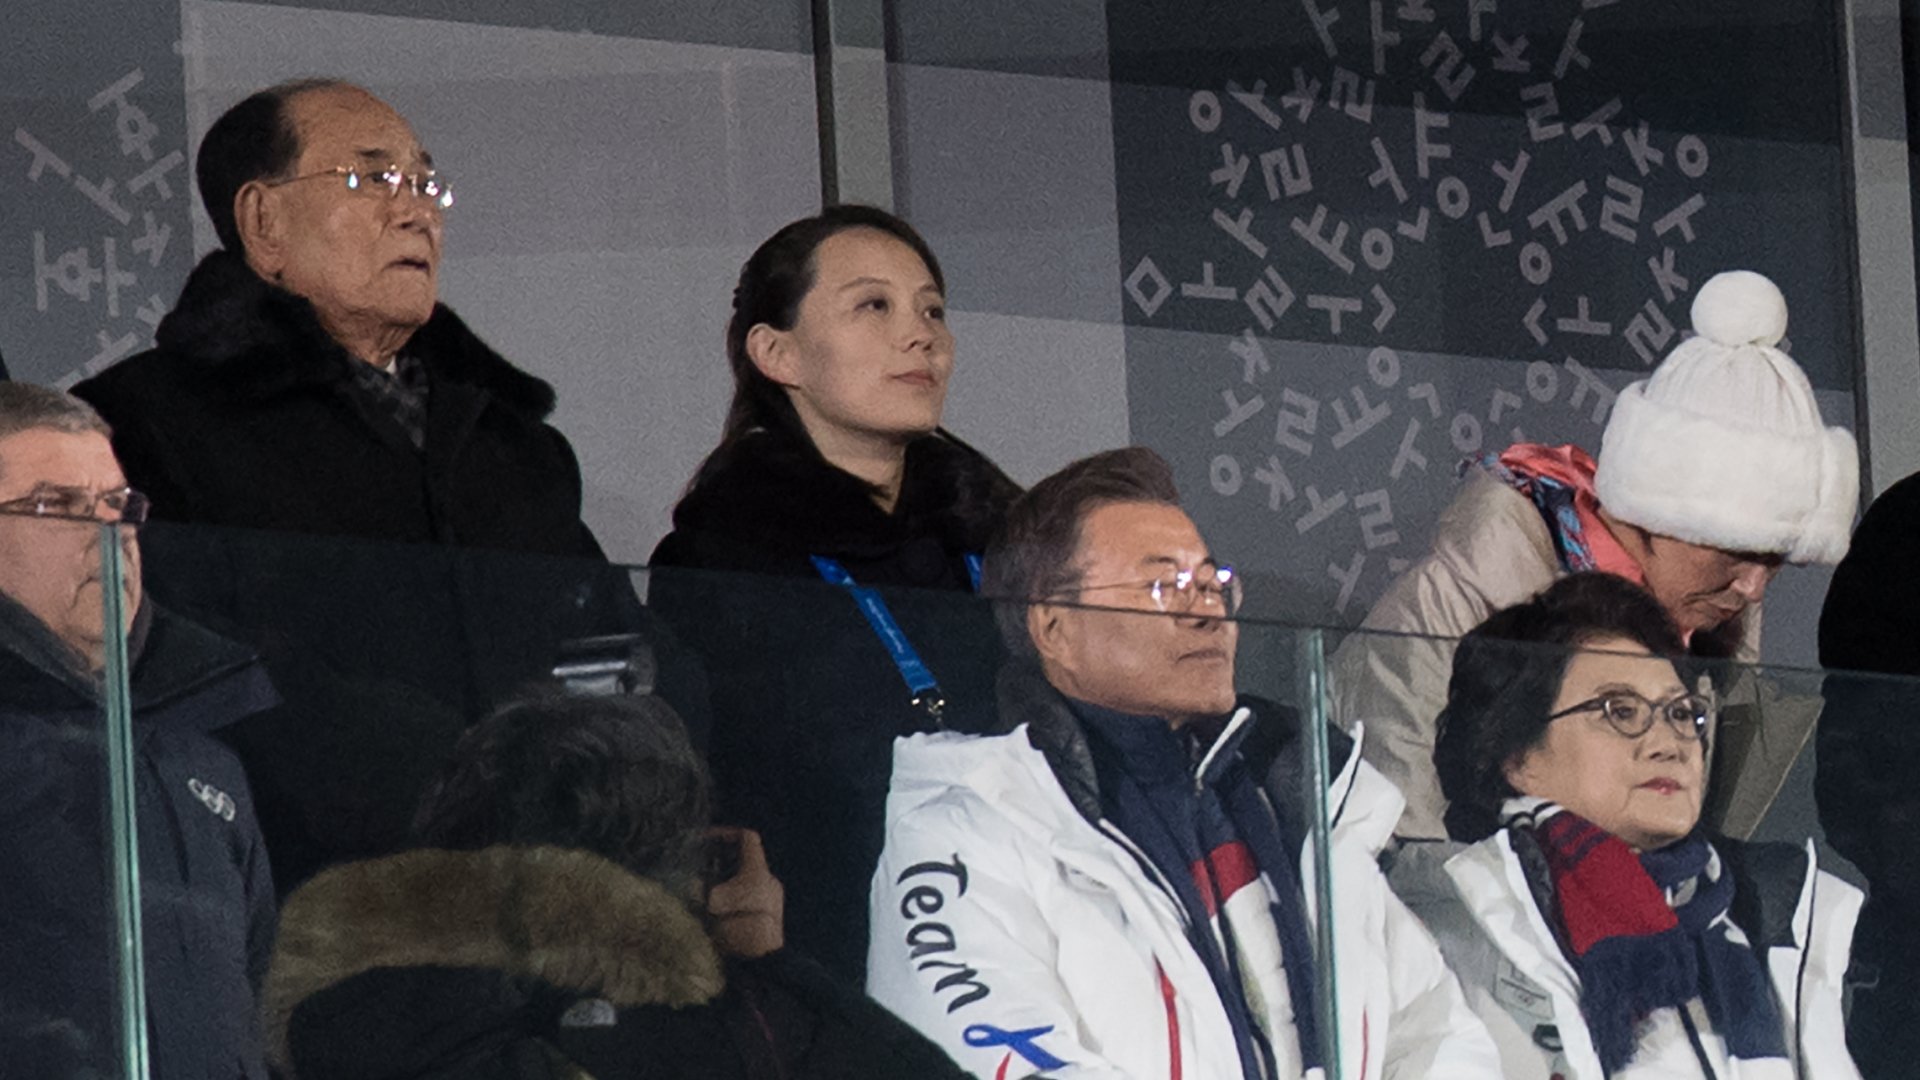 Bà Kim Yo Jong, em gái và là cố vấn thân cận của nhà lãnh đạo Triều Tiên Kim Jong-un tham dự lễ khai mạc Olympic PyeongChang 2018. (Ảnh: Getty Images) 